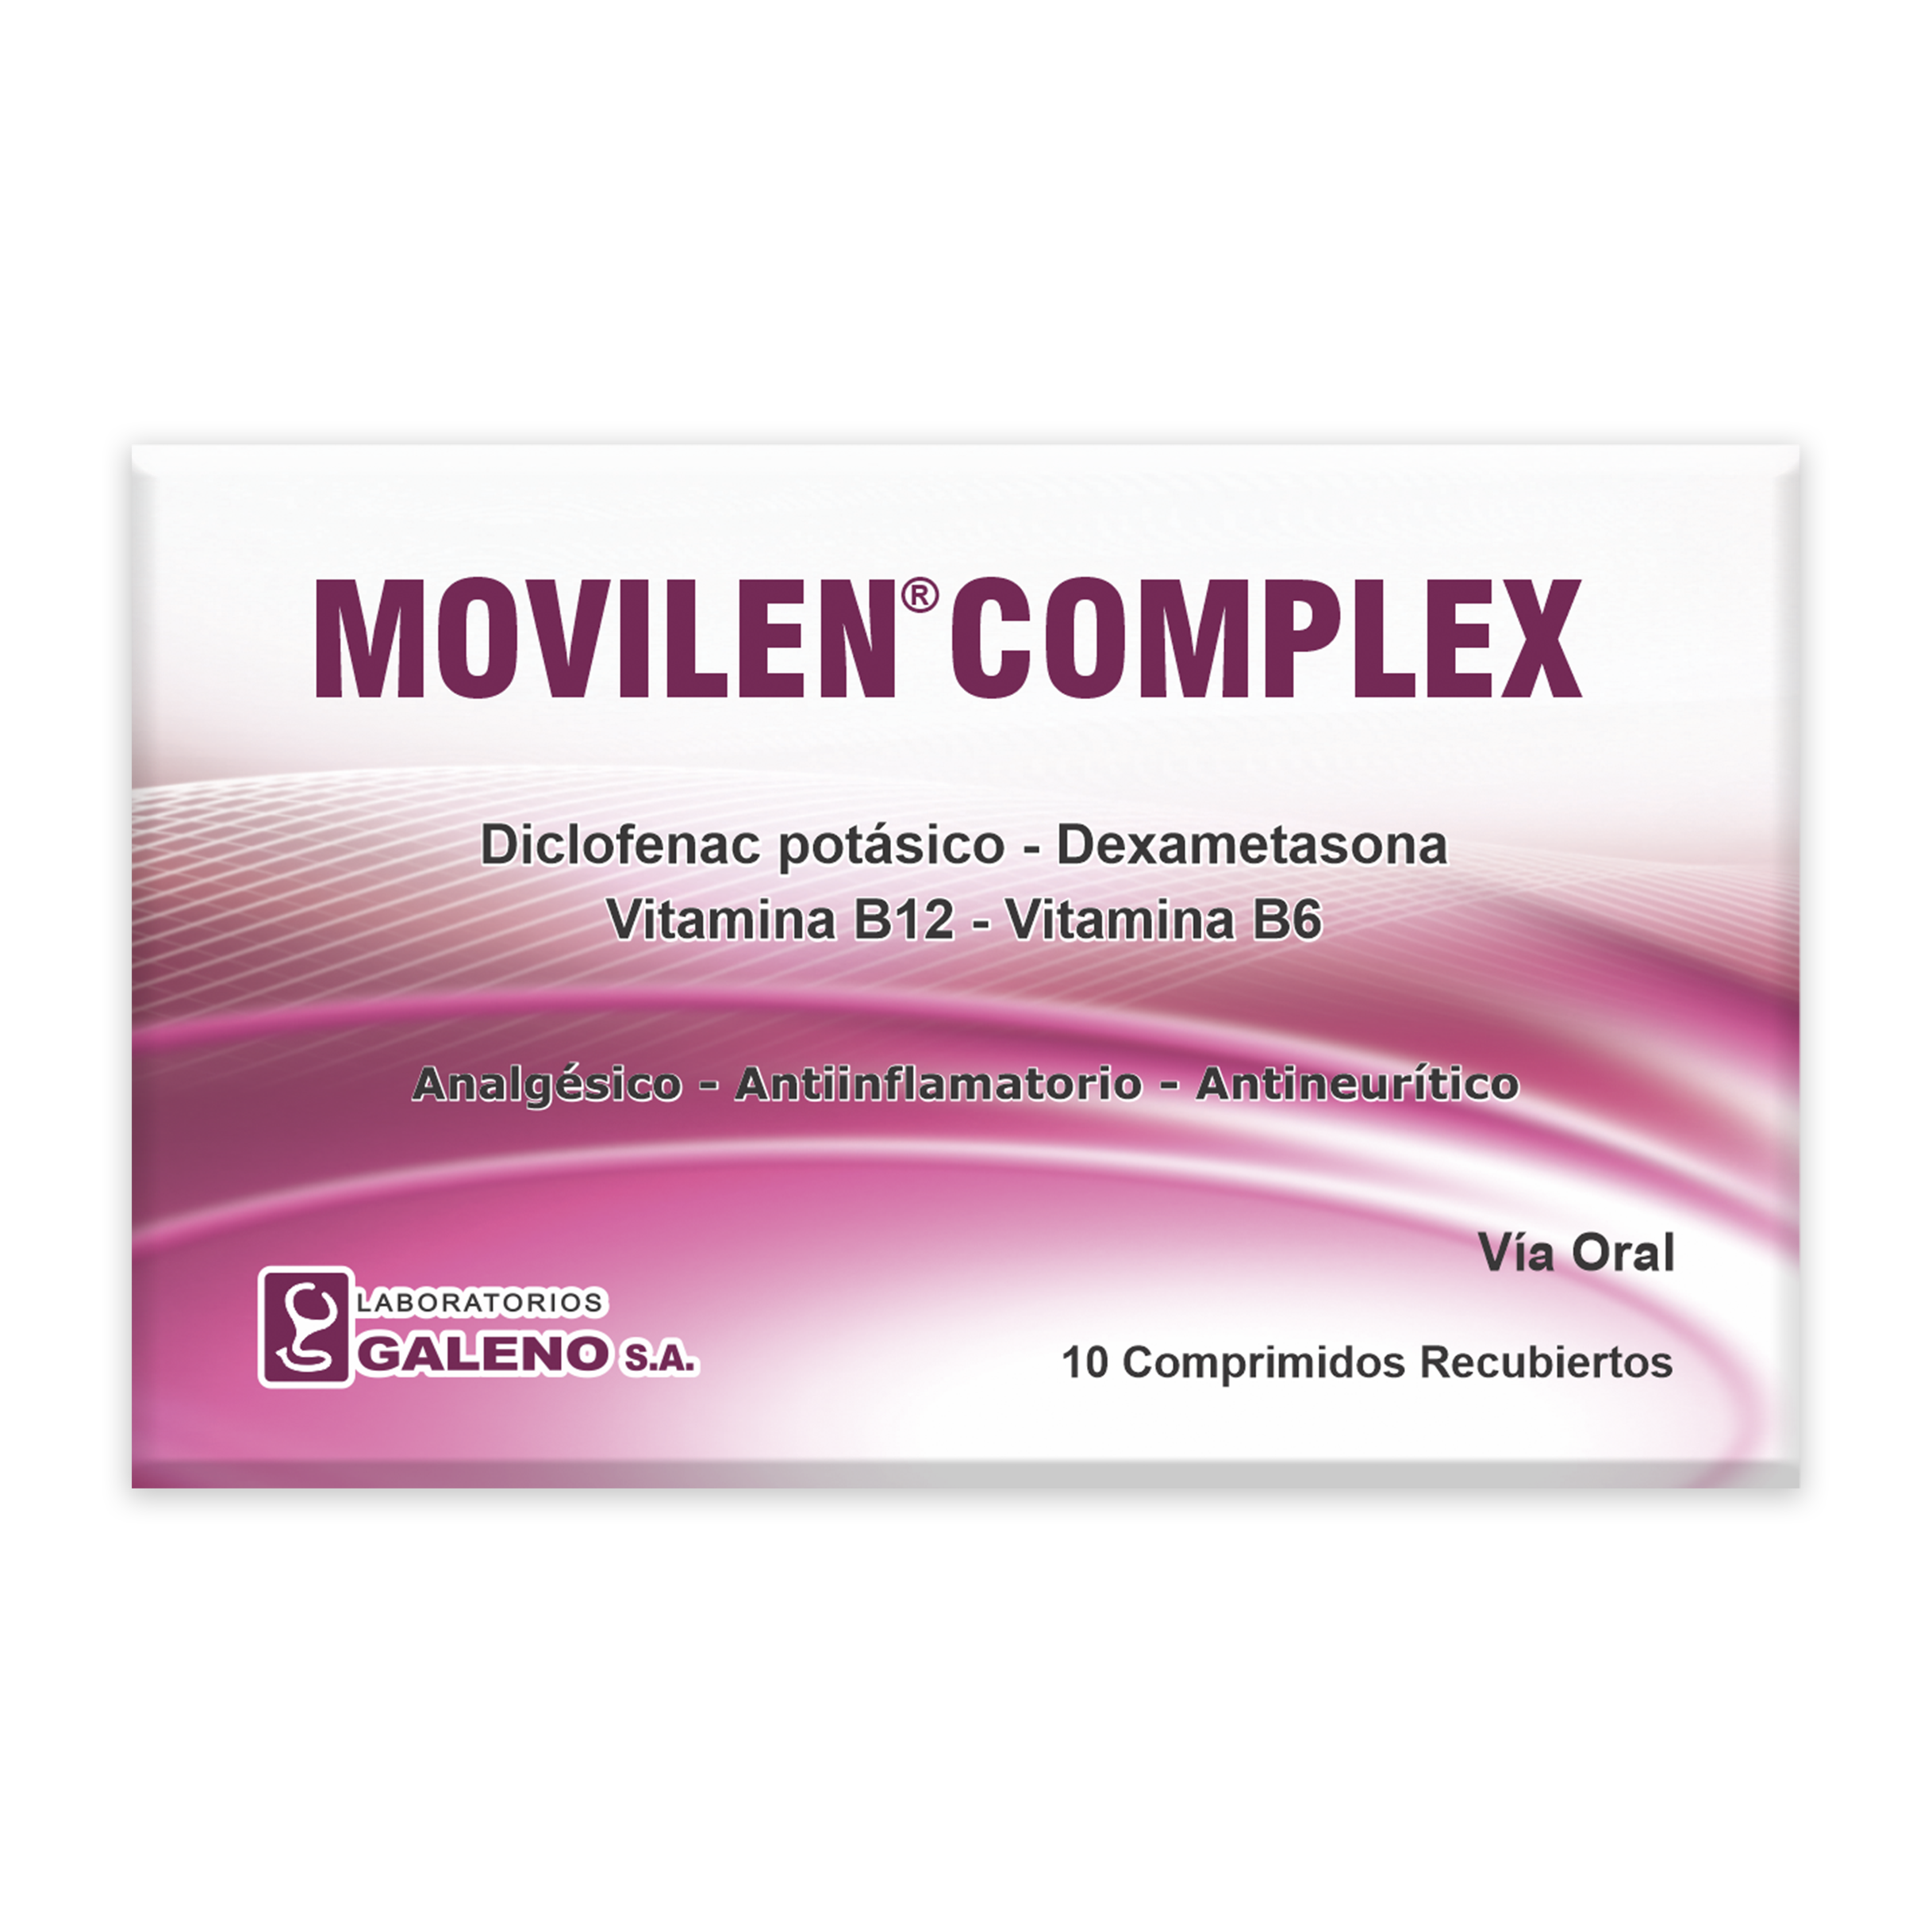 MOVILEN COMPLEX